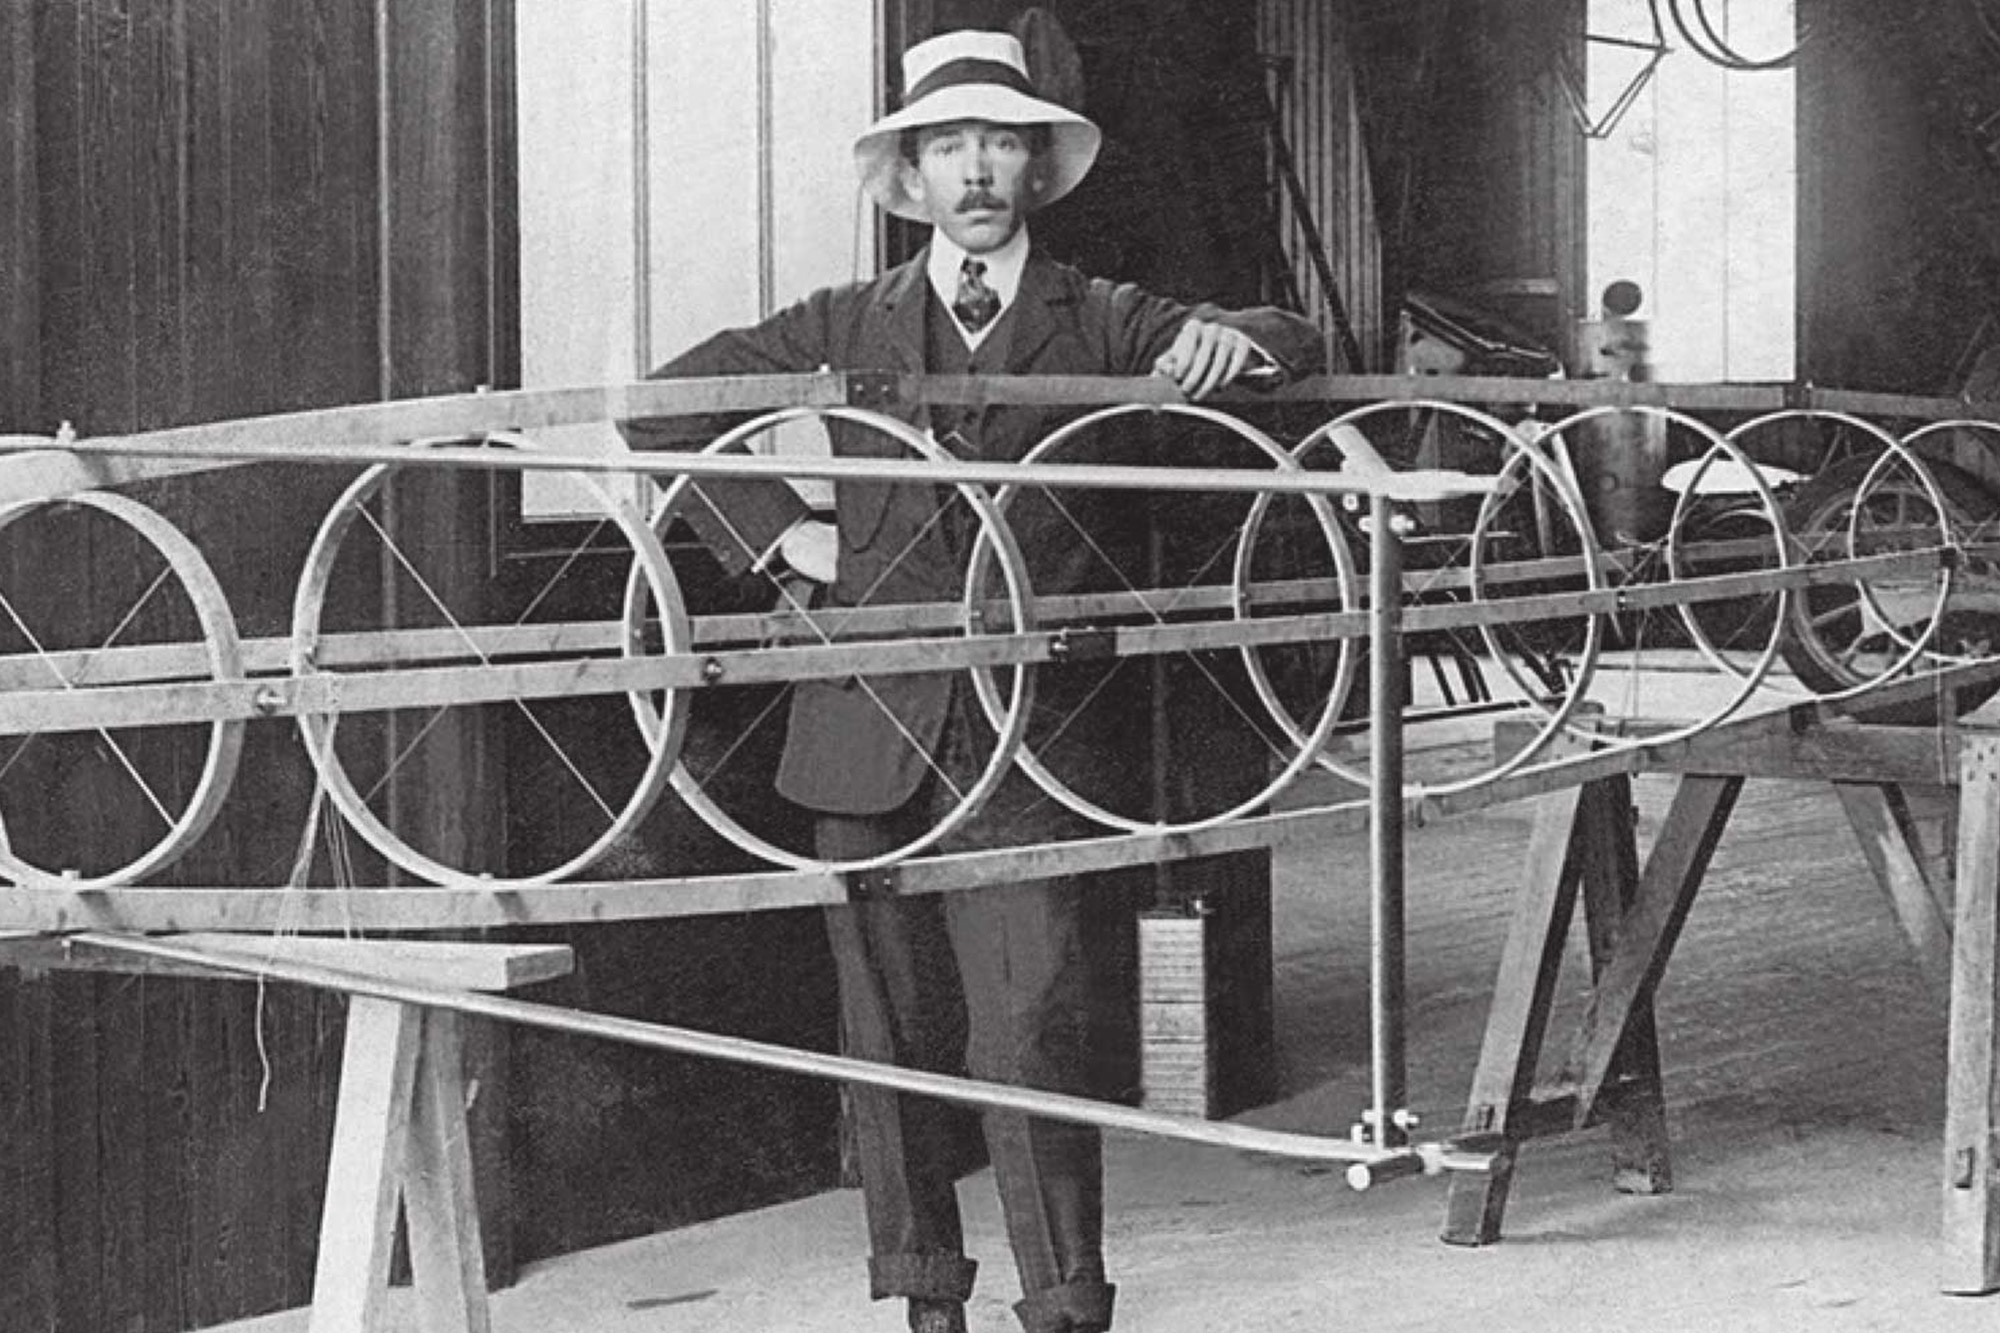 Изобретатель Альберто Сантос-Дюмон выступал против использования авиации в военных целях. Учёный не был услышан и в отчаянии повесился